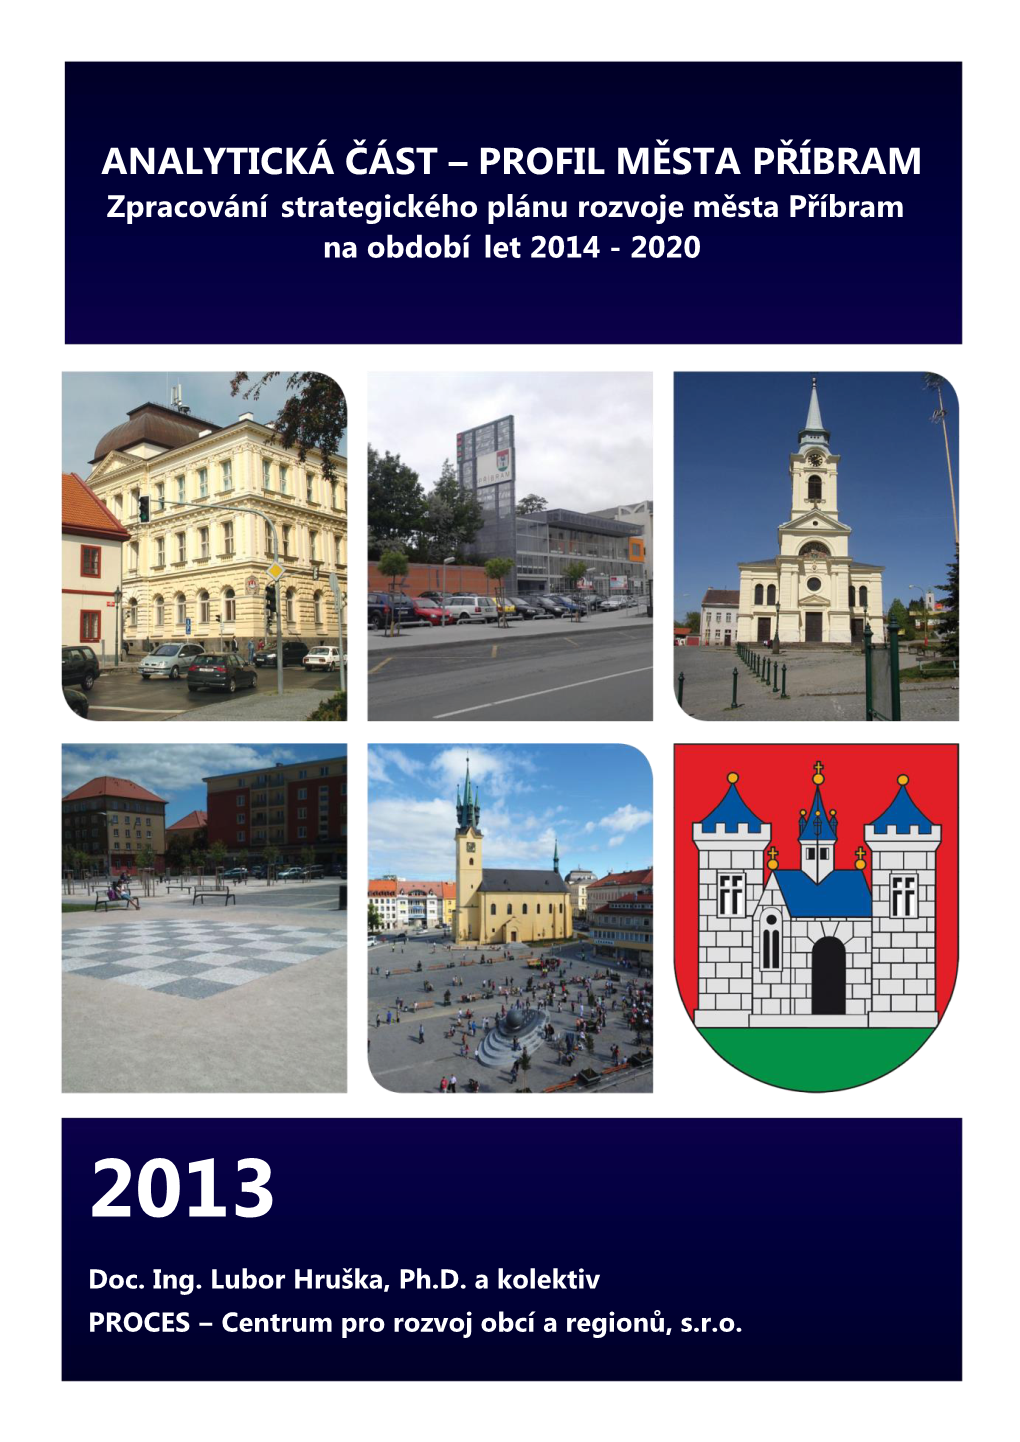 PROFIL MĚSTA PŘÍBRAM Zpracování Strategického Plánu Rozvoje Města Příbram Na Období Let 2014 - 2020